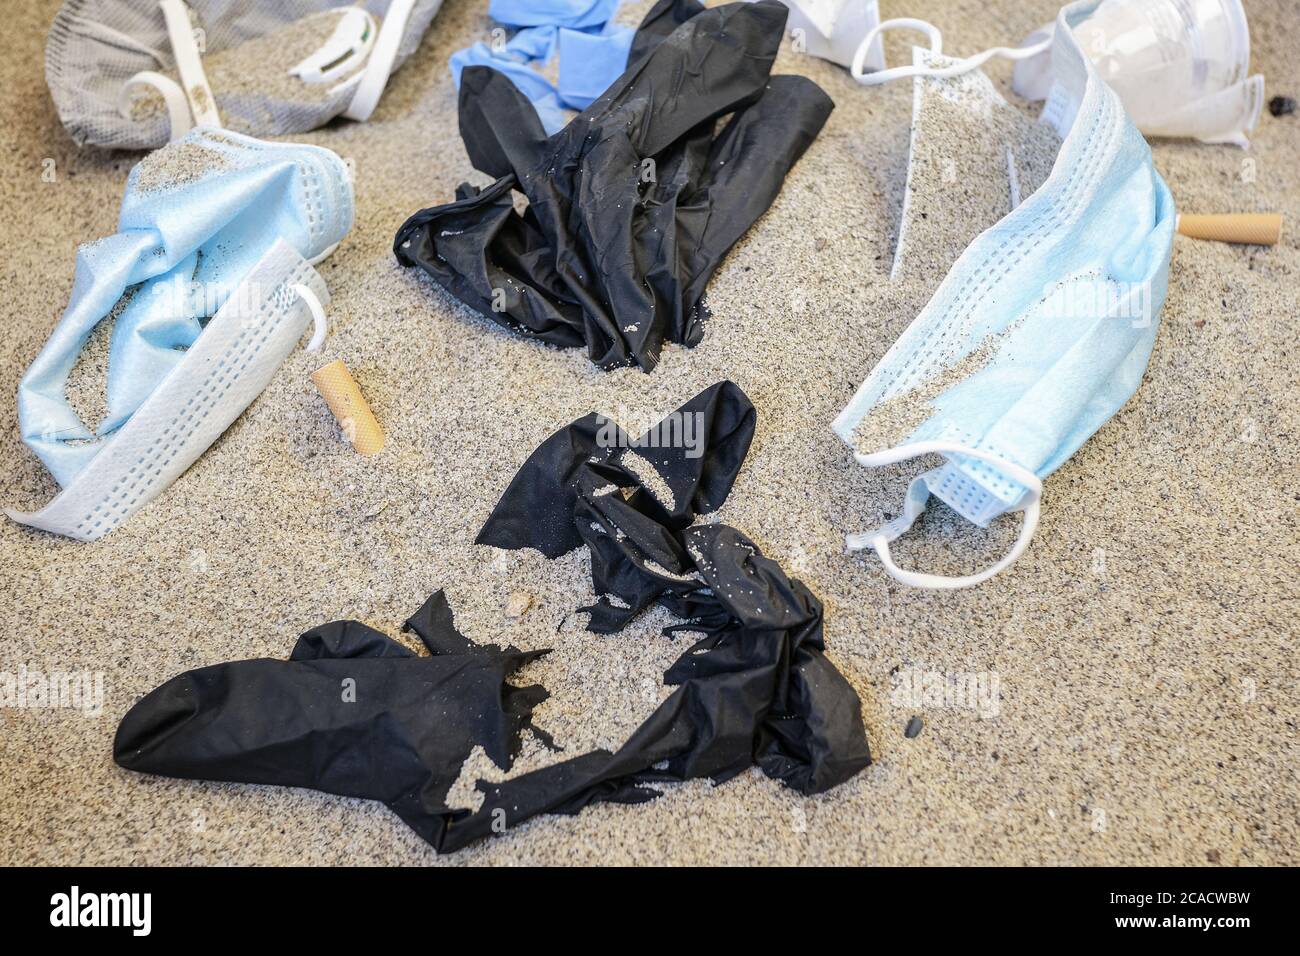 Maschere facciali, guanti e rifiuti di plastica, rifiuti medici monouso sulla costa del mare, covid inquinamento marino Foto Stock